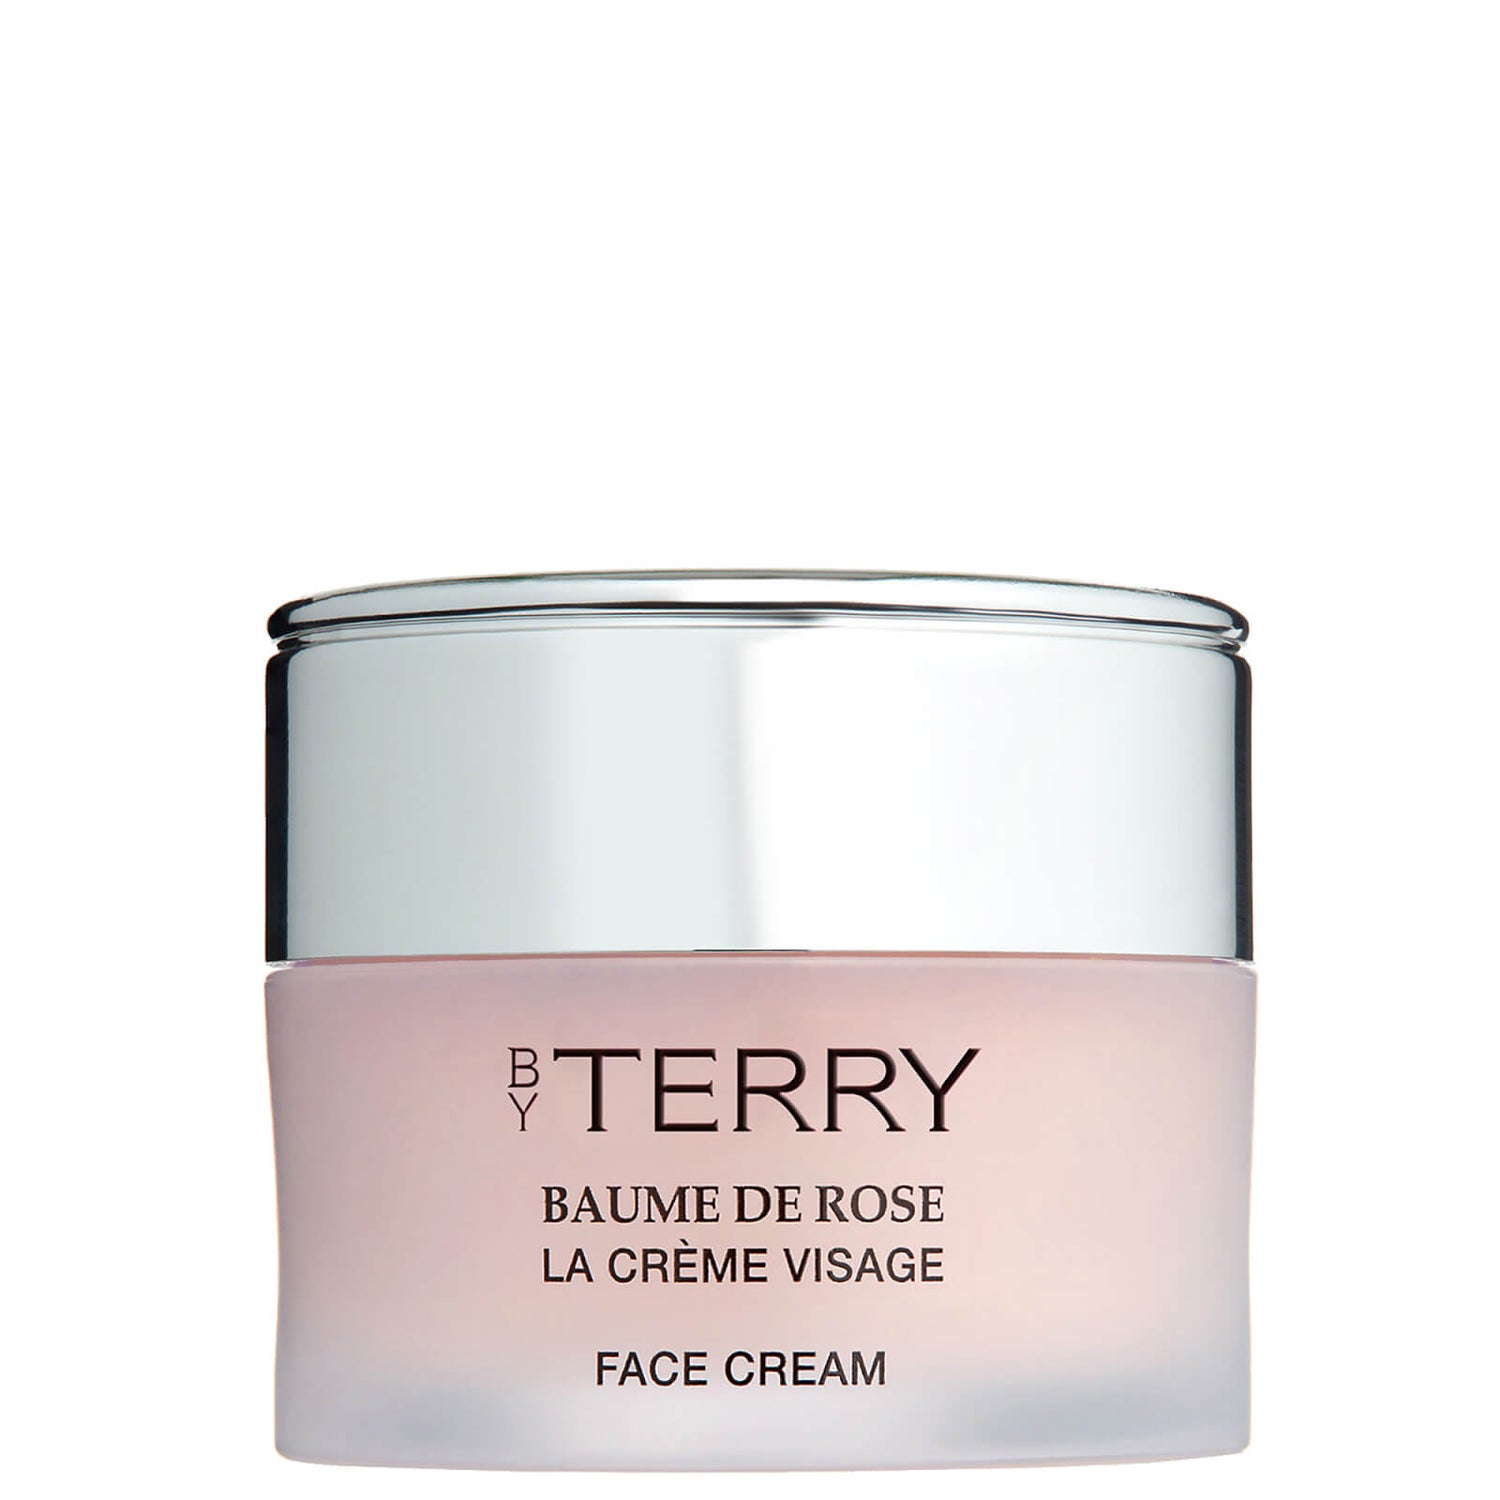 By Terry Baume de Rose La Creme Visage Face Cream 50 ml